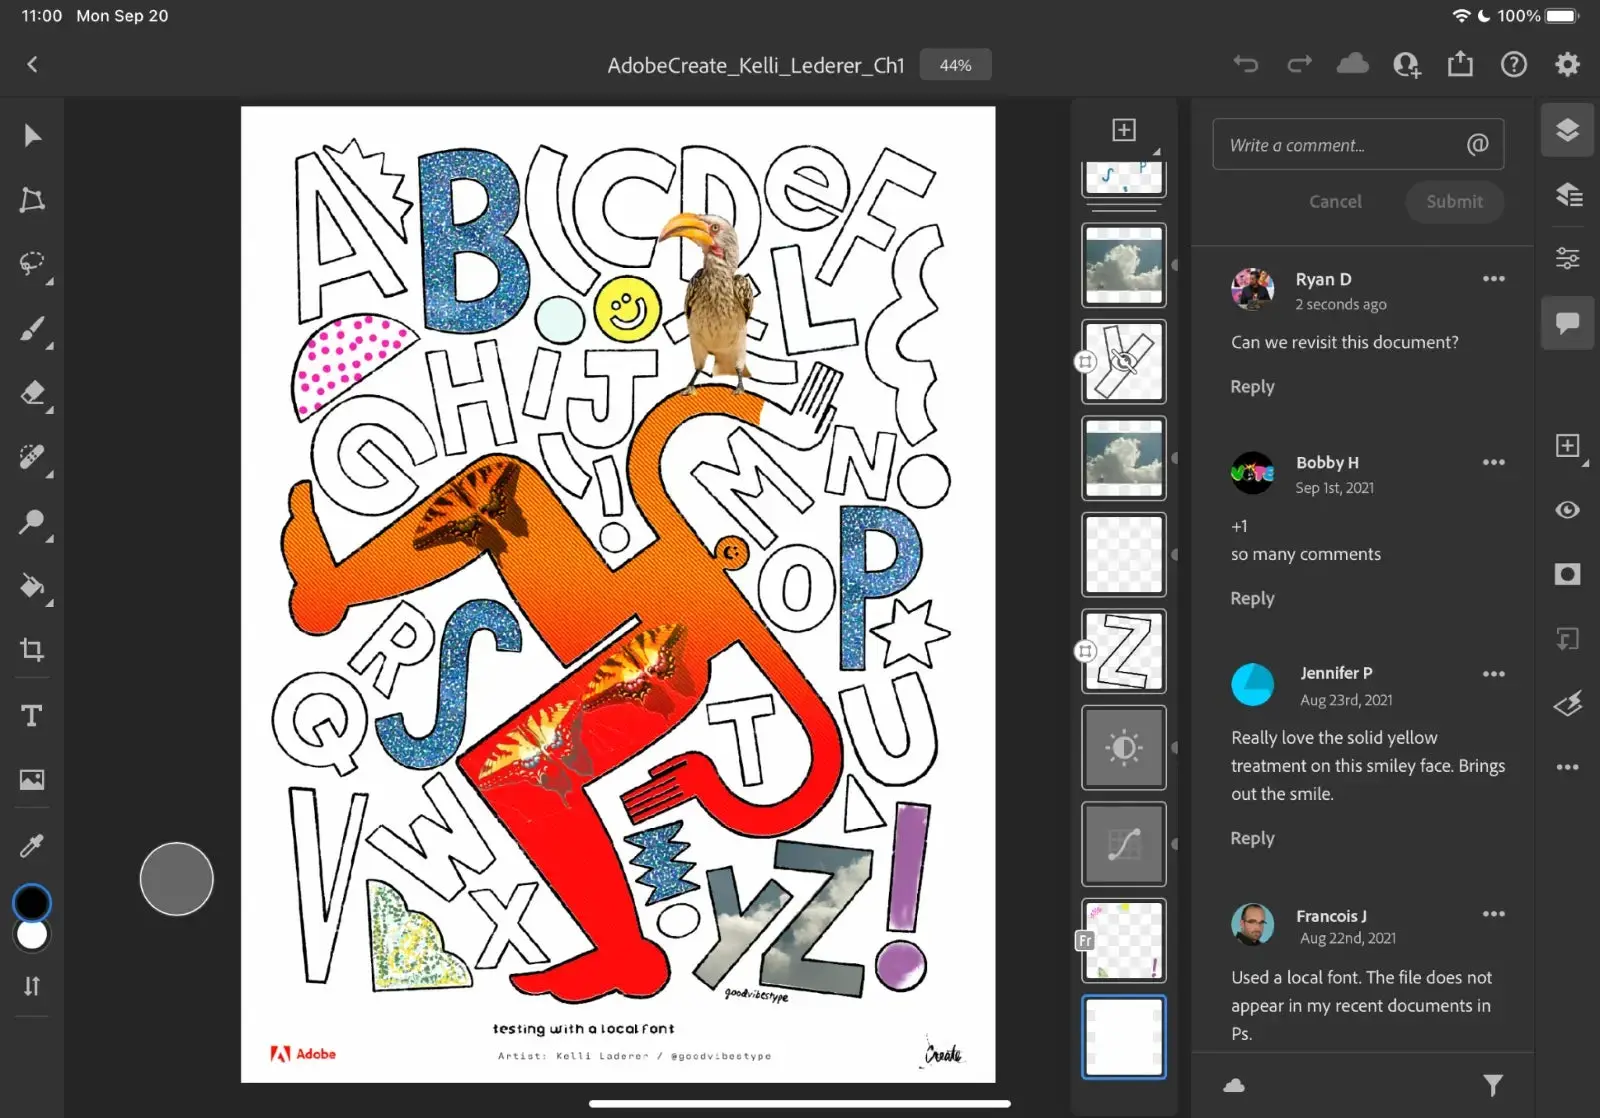 Interface do Photoshop no iPad com algumas ilustrações e letras de diferentes cores e contornos